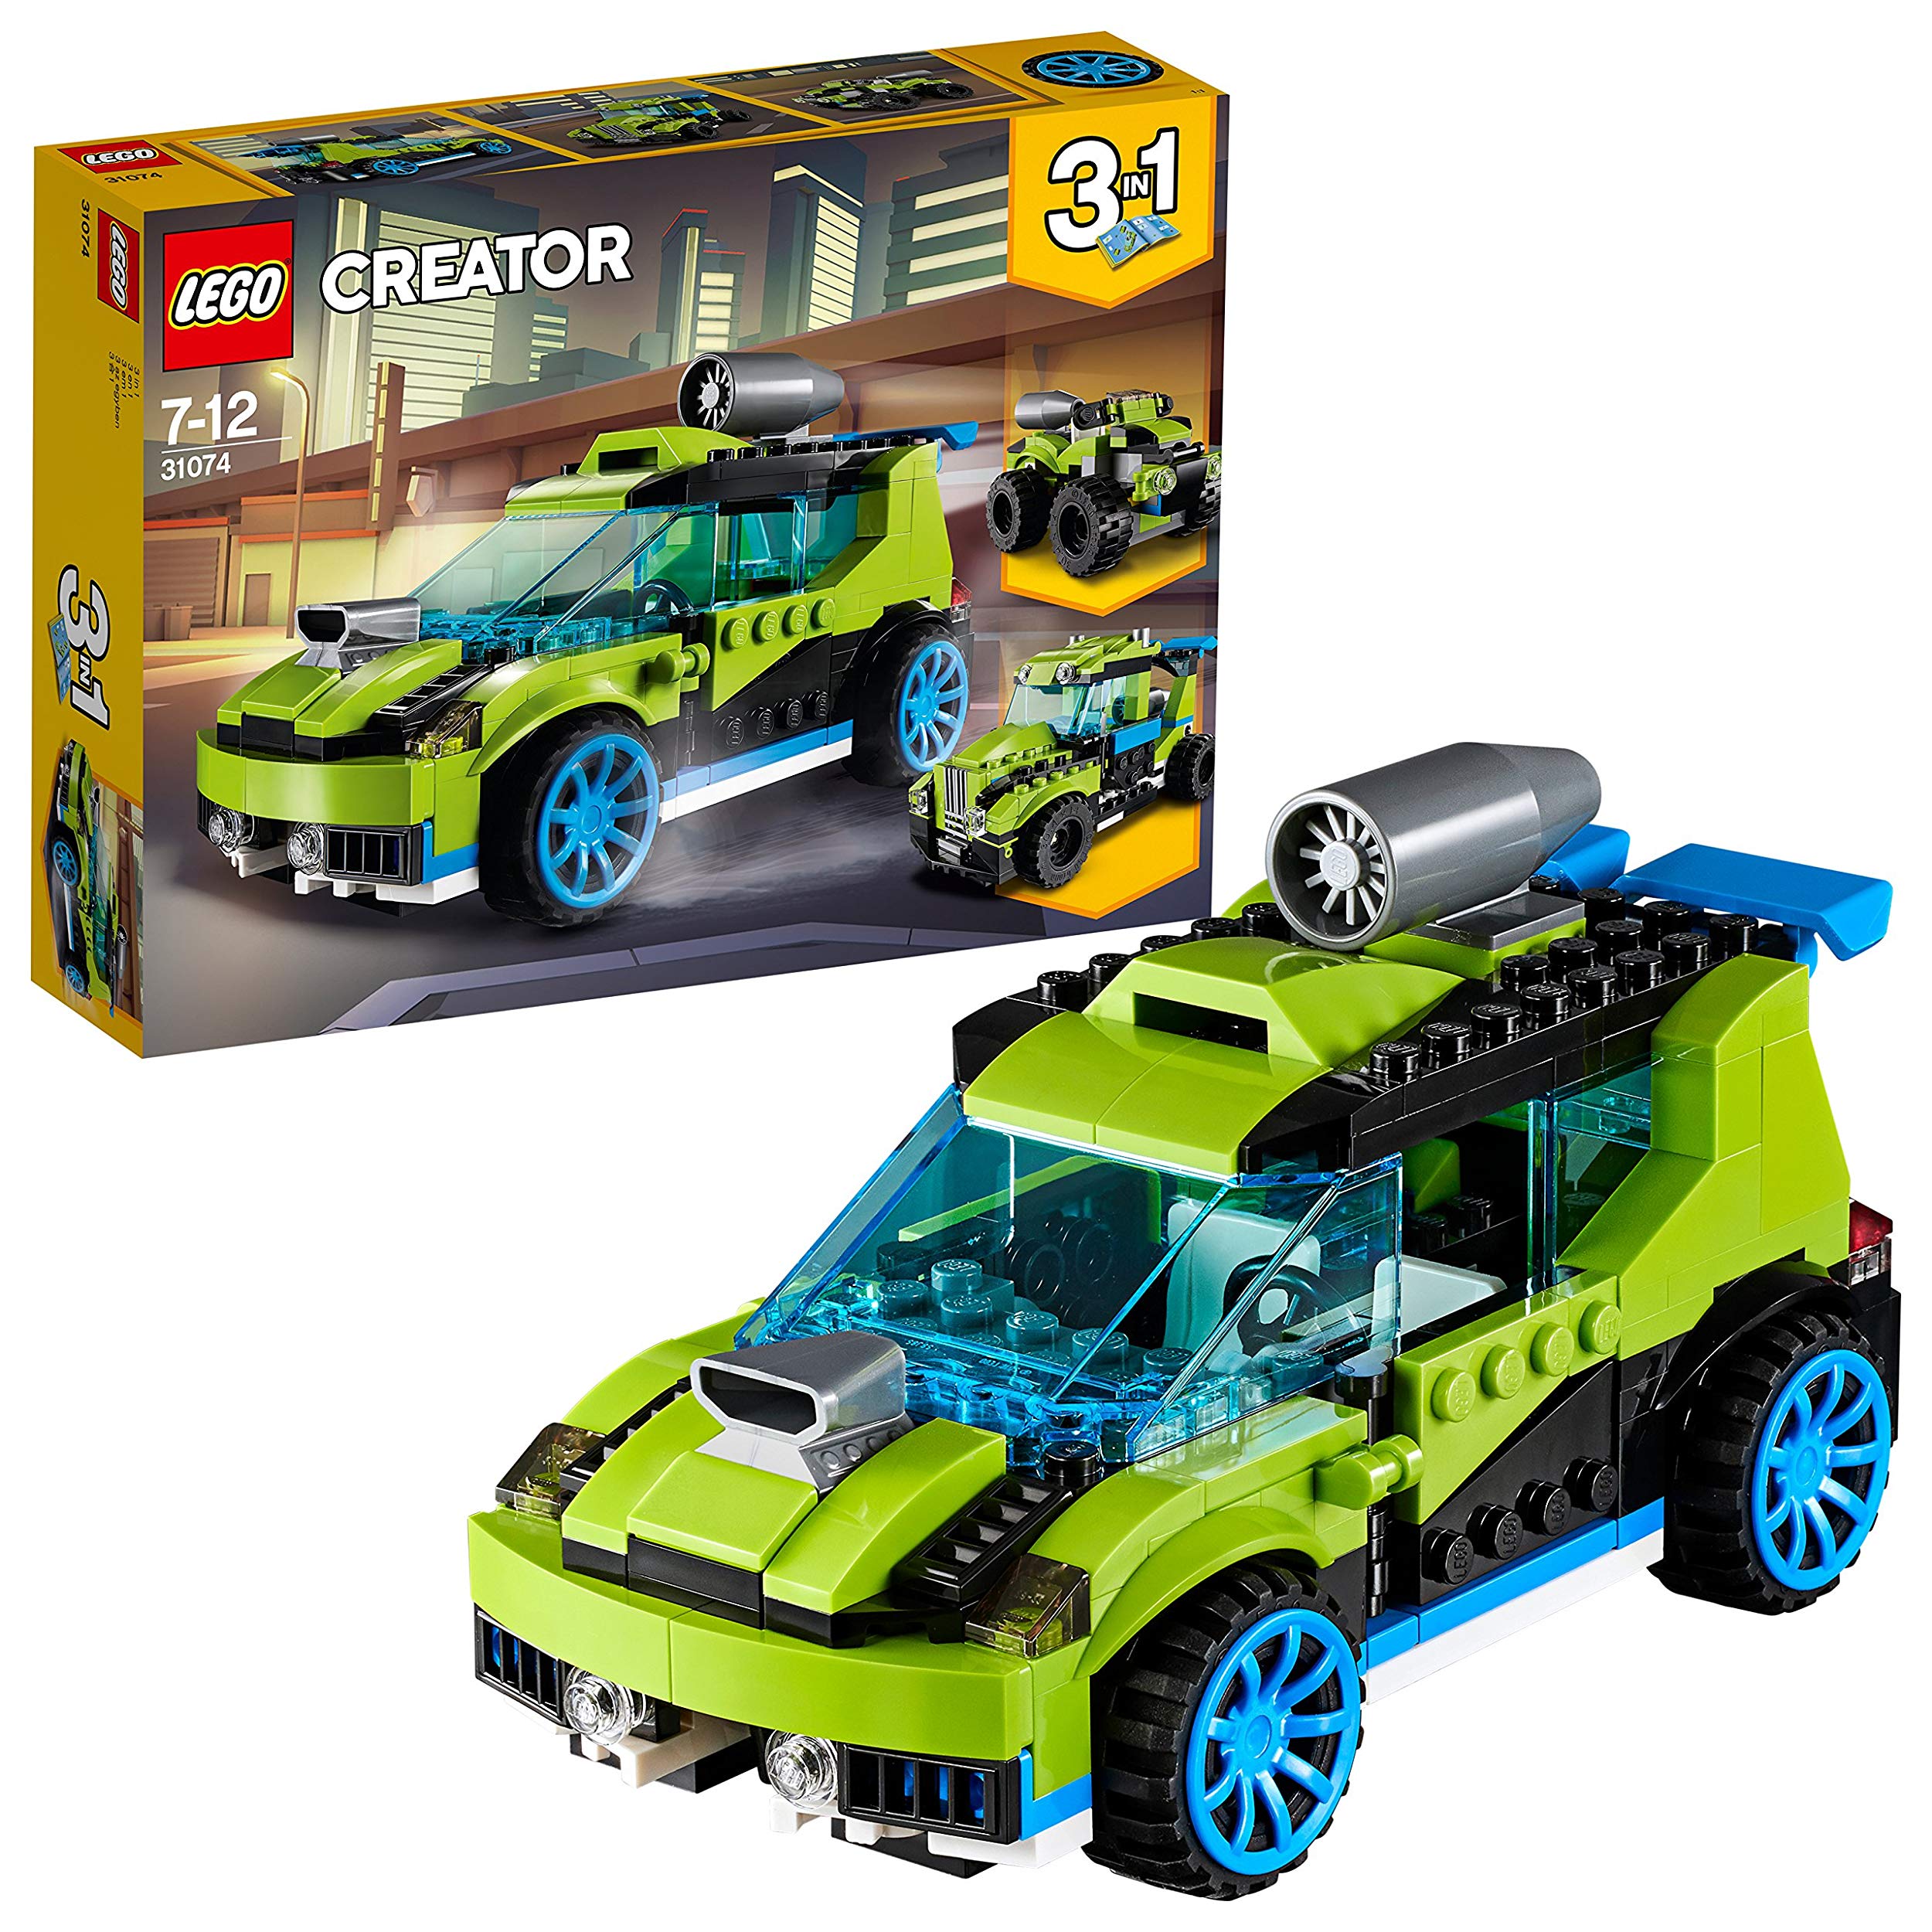 Lego Rockets Rallye Car